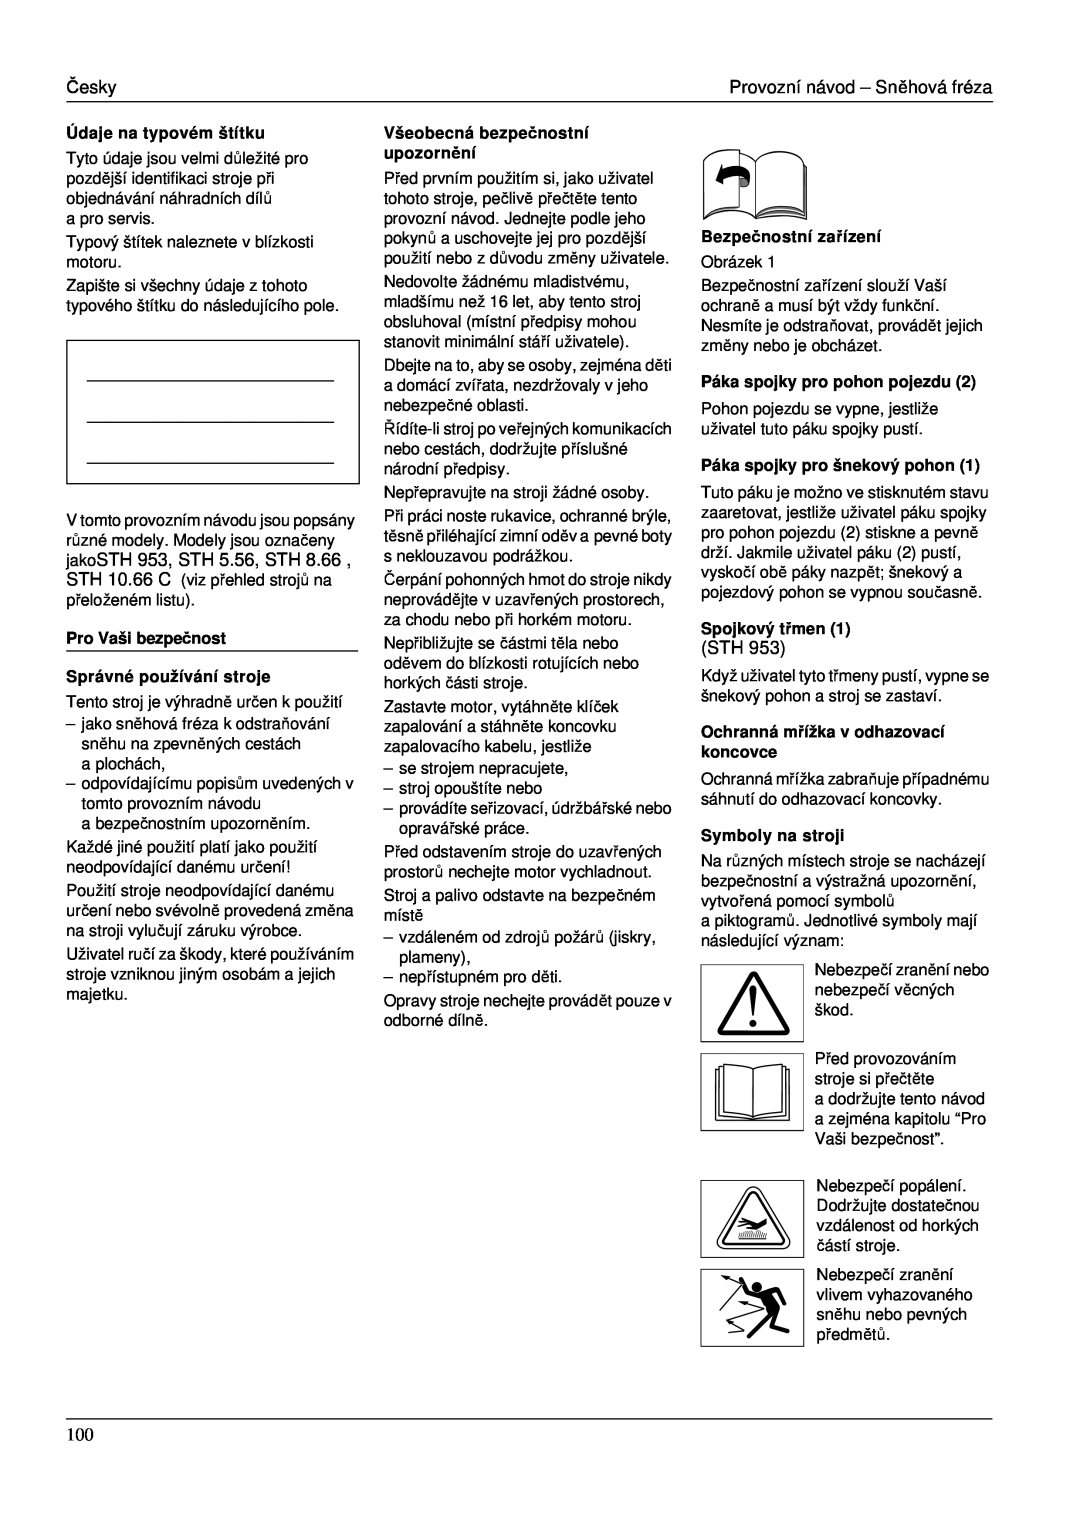 Karcher STH 953 Údaje na typovém štítku, Pro Vaši bezpe čnost Správné používání stroje, Všeobecná bezpečnostní upozornění 